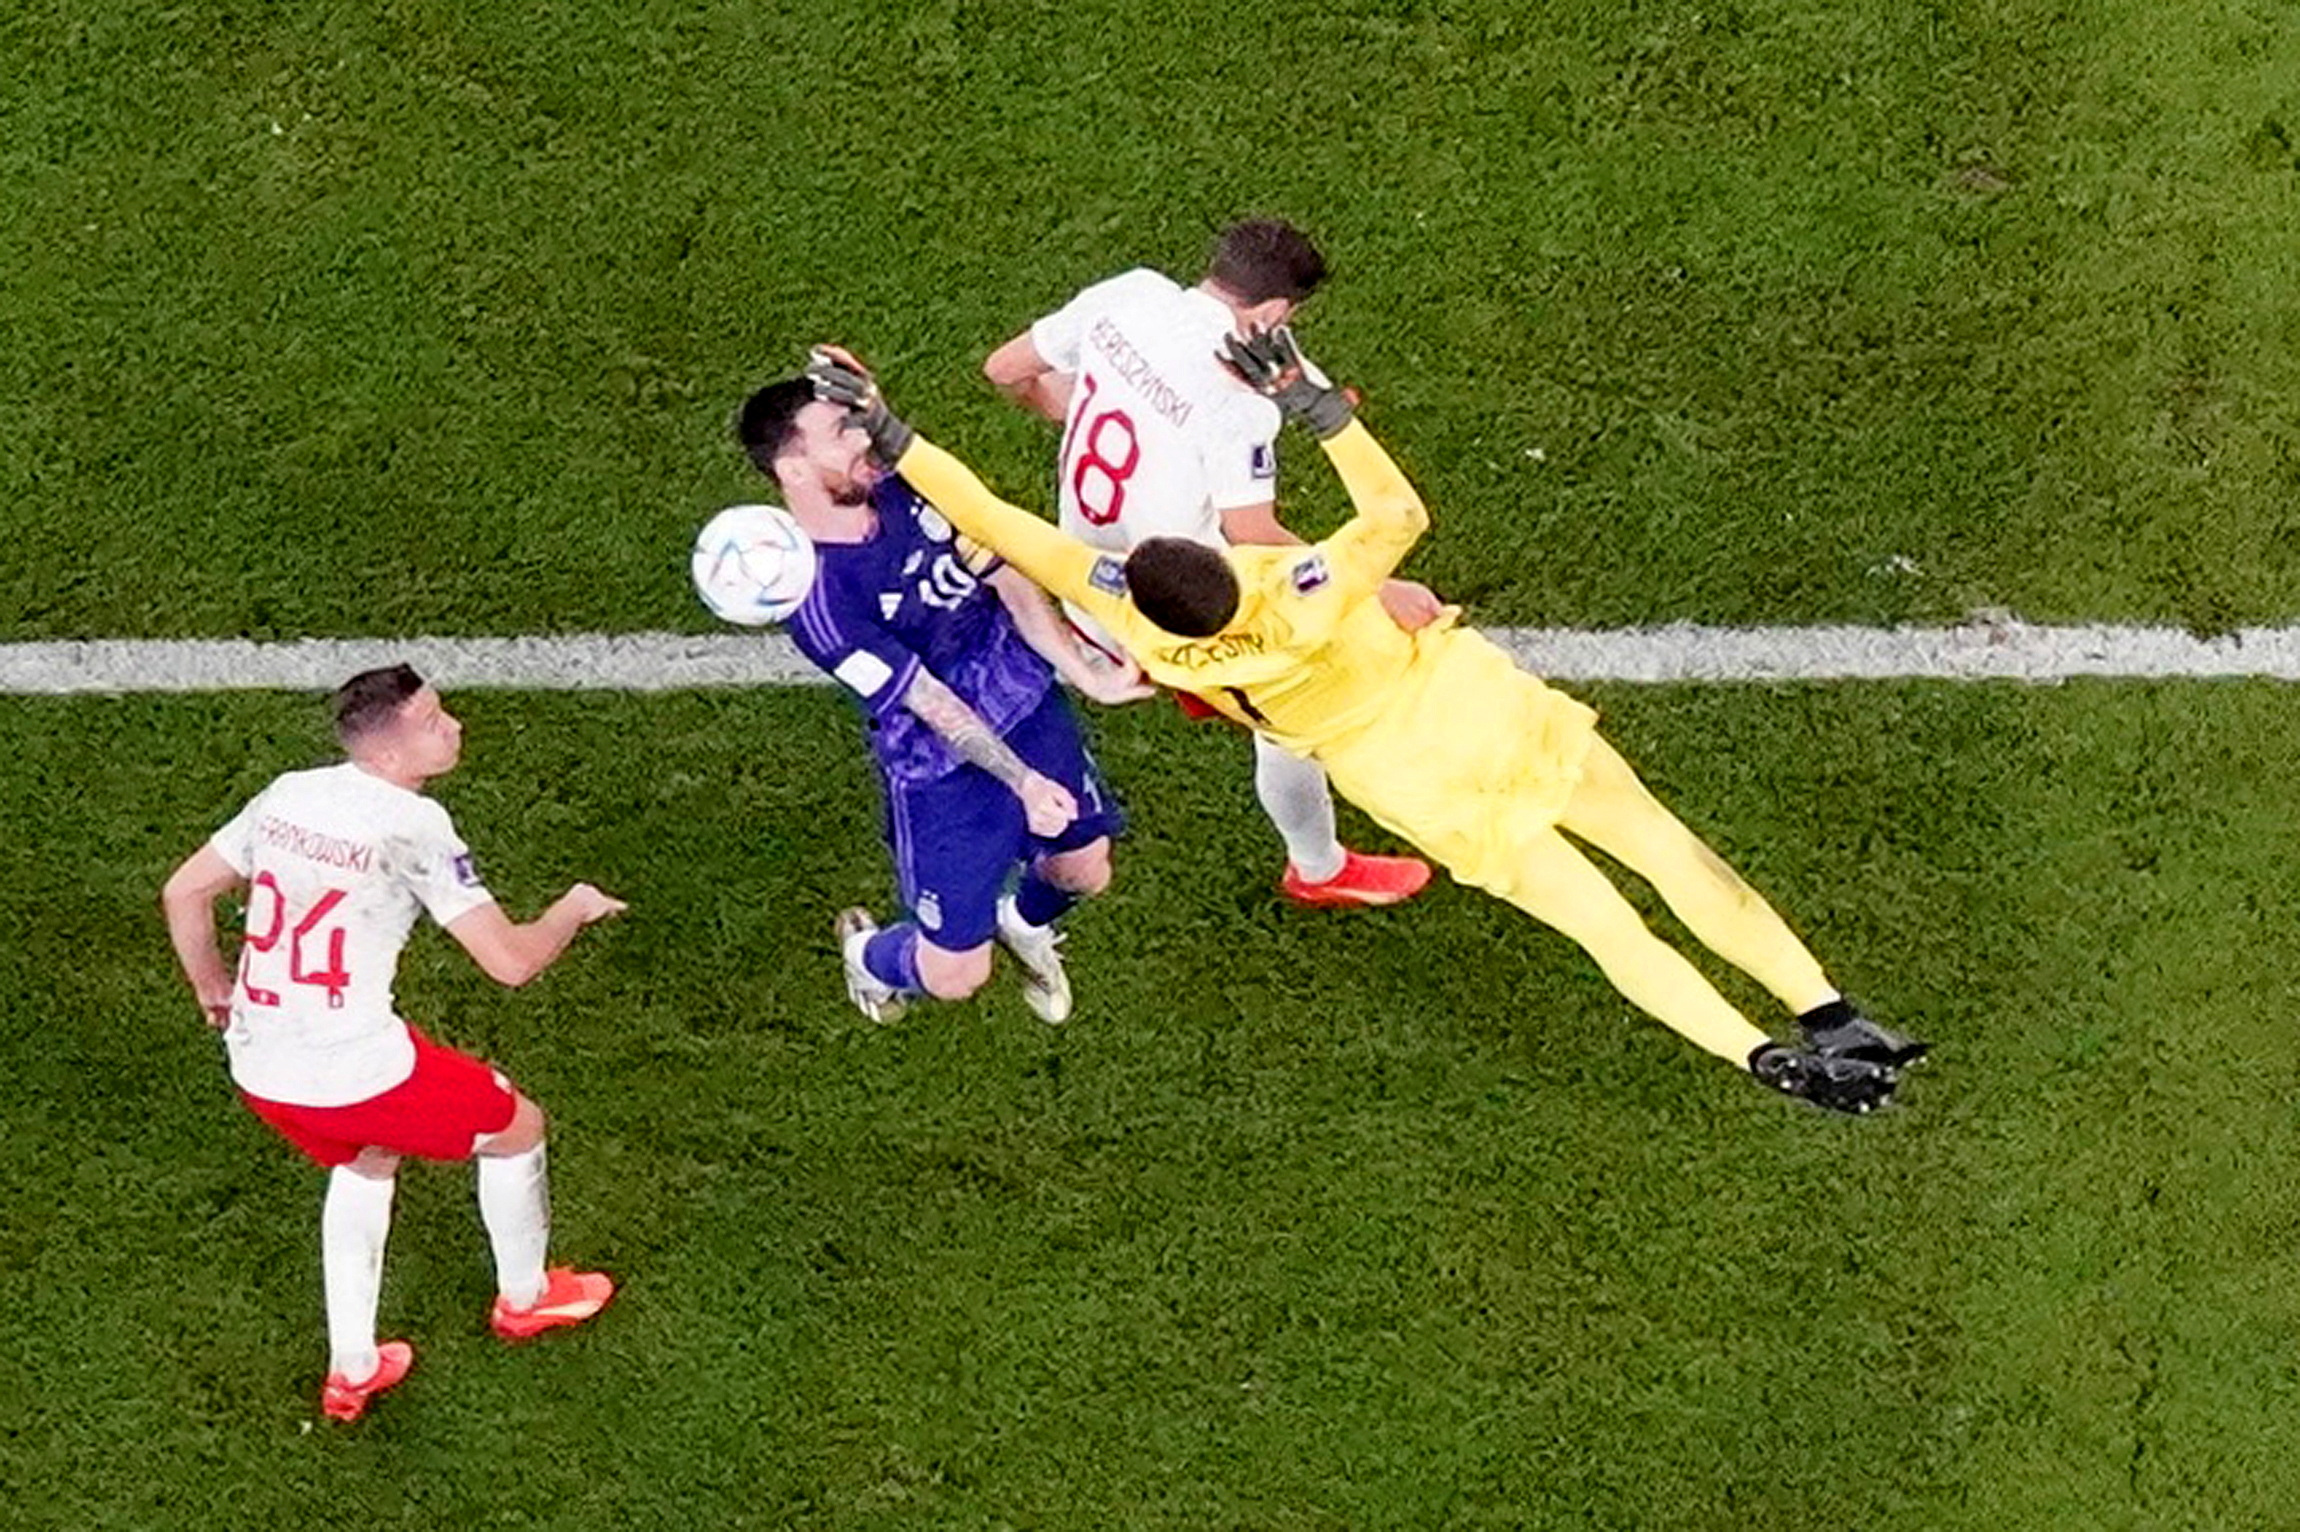 La jugada del penal: Wojciech Szczesny voló y como no lo vio a Lionel Messi lo golpeó (REUTERS/Dylan Martínez)